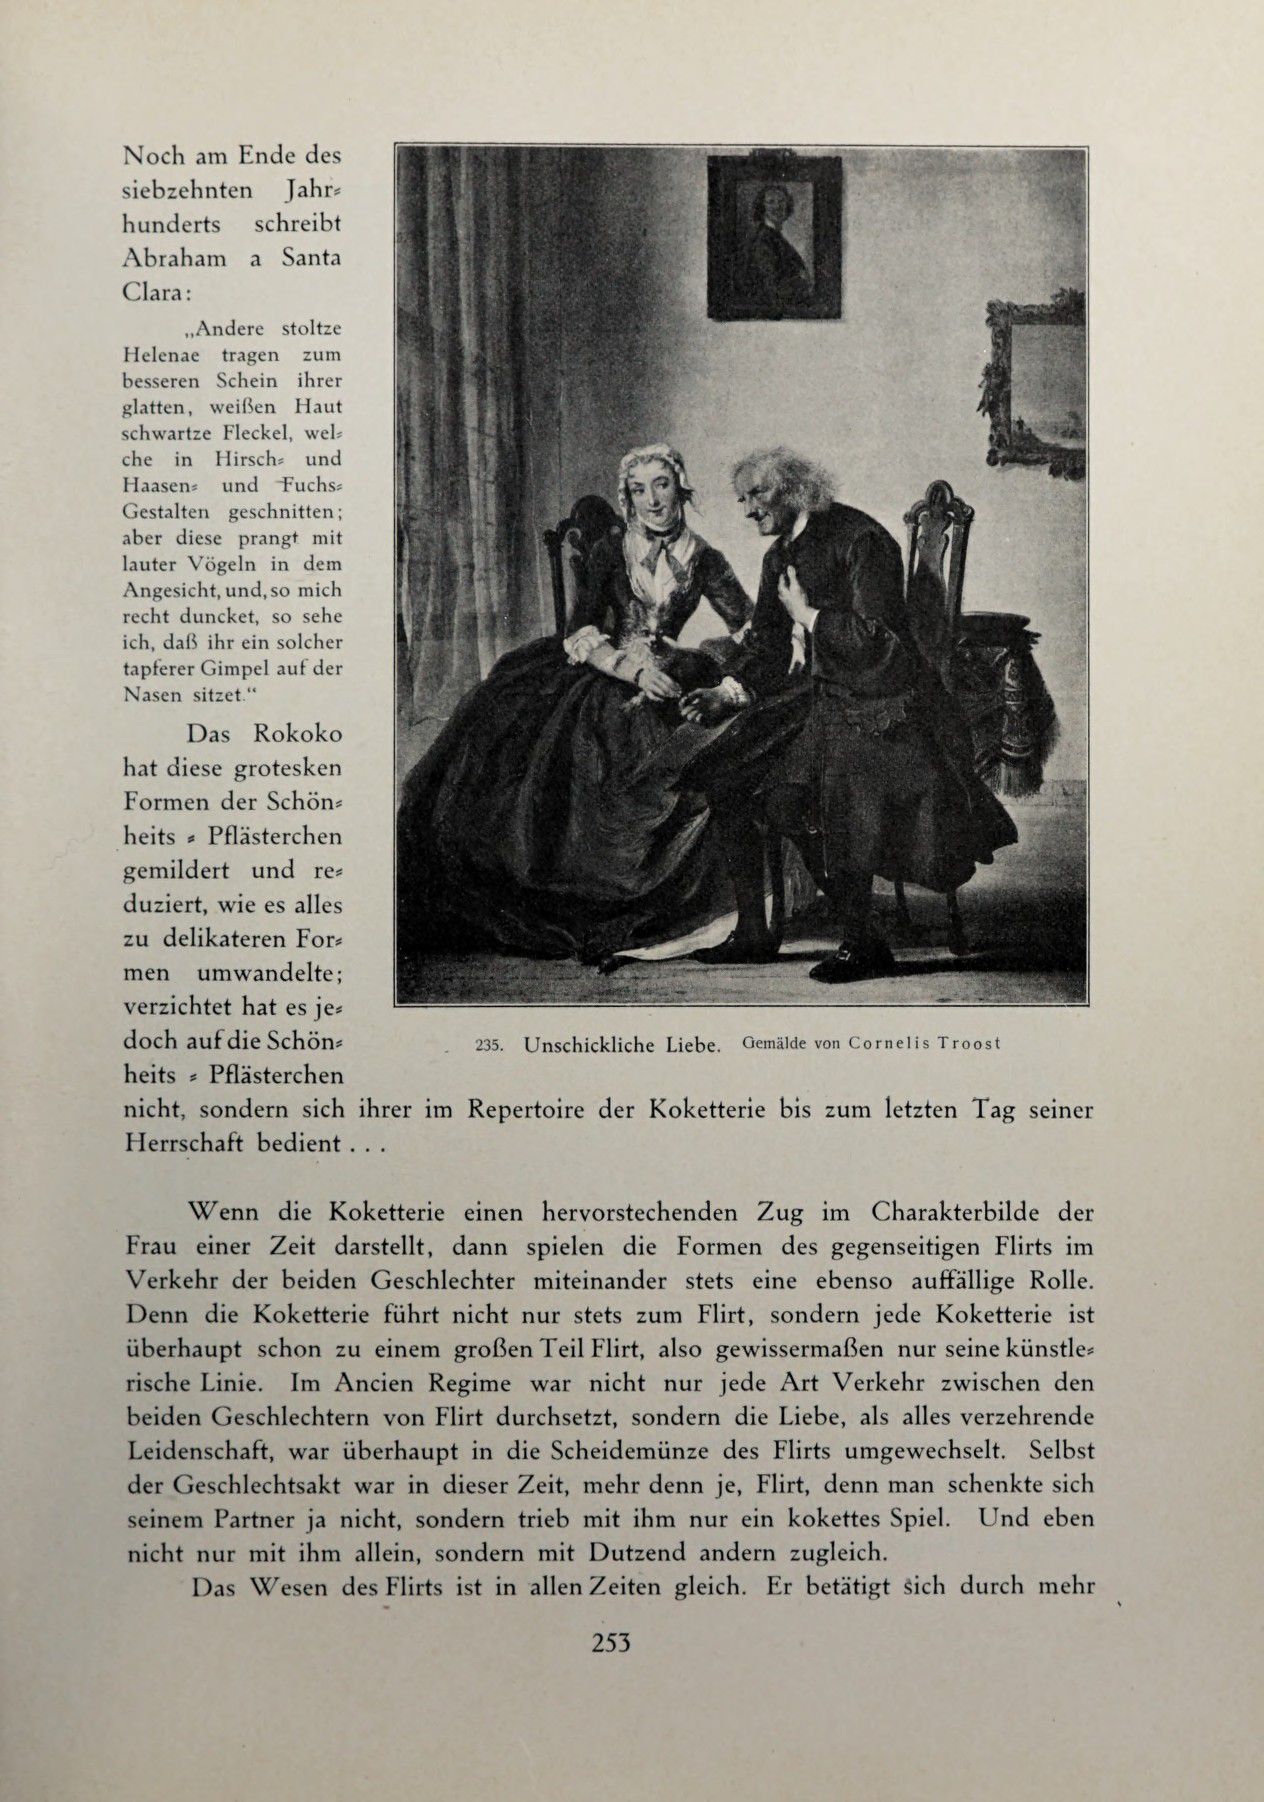 [Eduard Fuchs] Illustrierte Sittengeschichte vom Mittelalter bis zur Gegenwart: Bd. 2. and Ergänzungsband. Die galante Zeit [German] 368